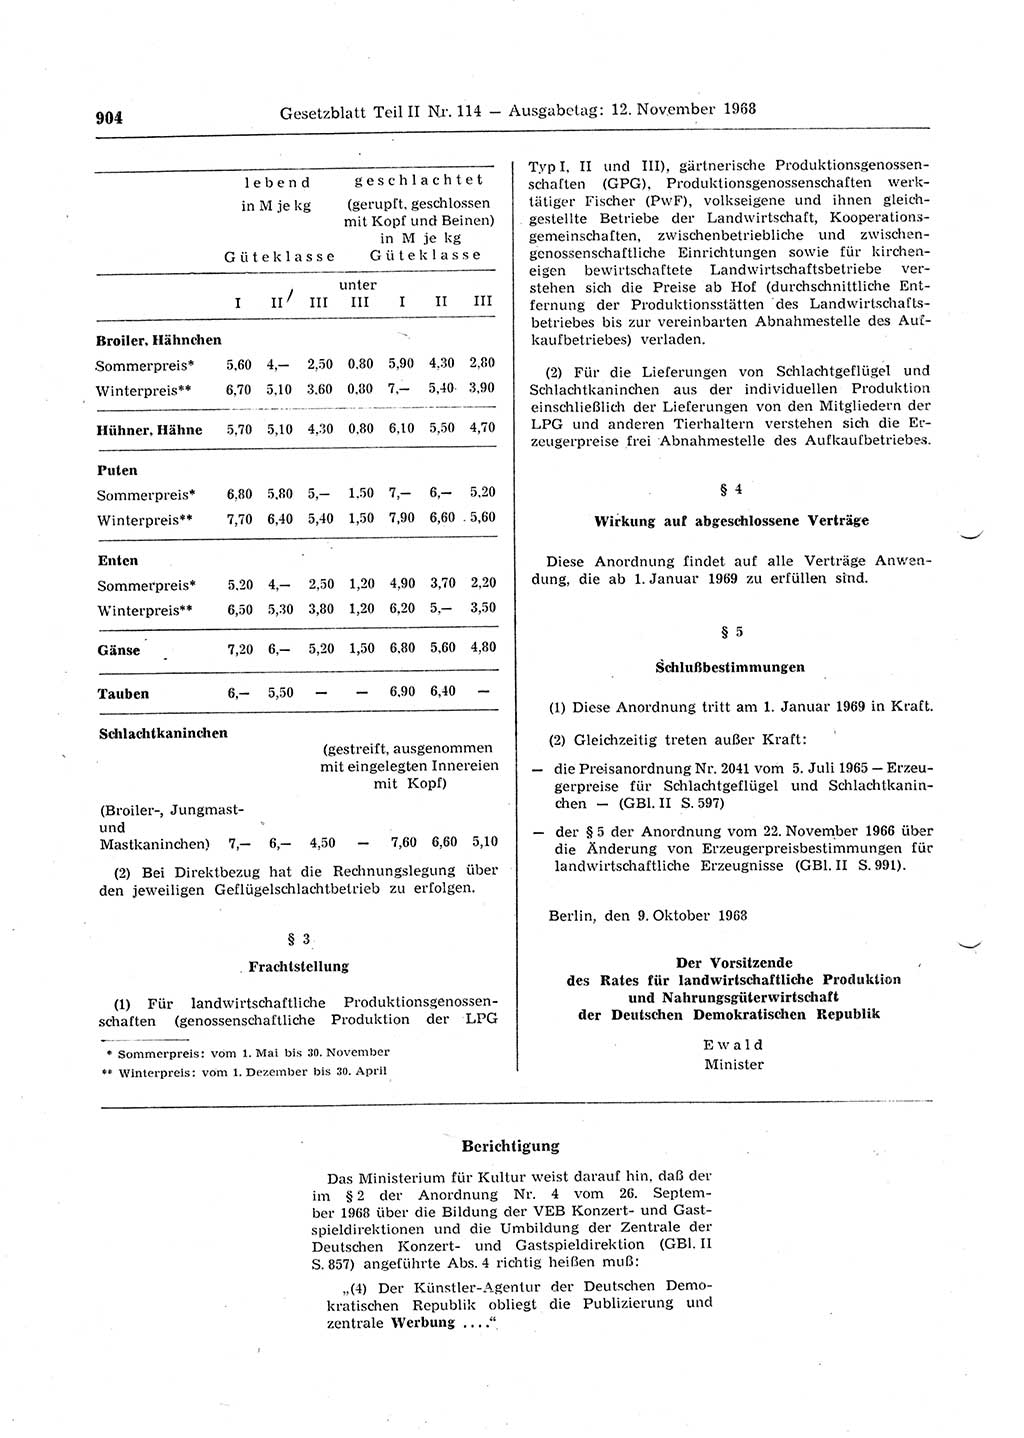 Gesetzblatt (GBl.) der Deutschen Demokratischen Republik (DDR) Teil ⅠⅠ 1968, Seite 904 (GBl. DDR ⅠⅠ 1968, S. 904)